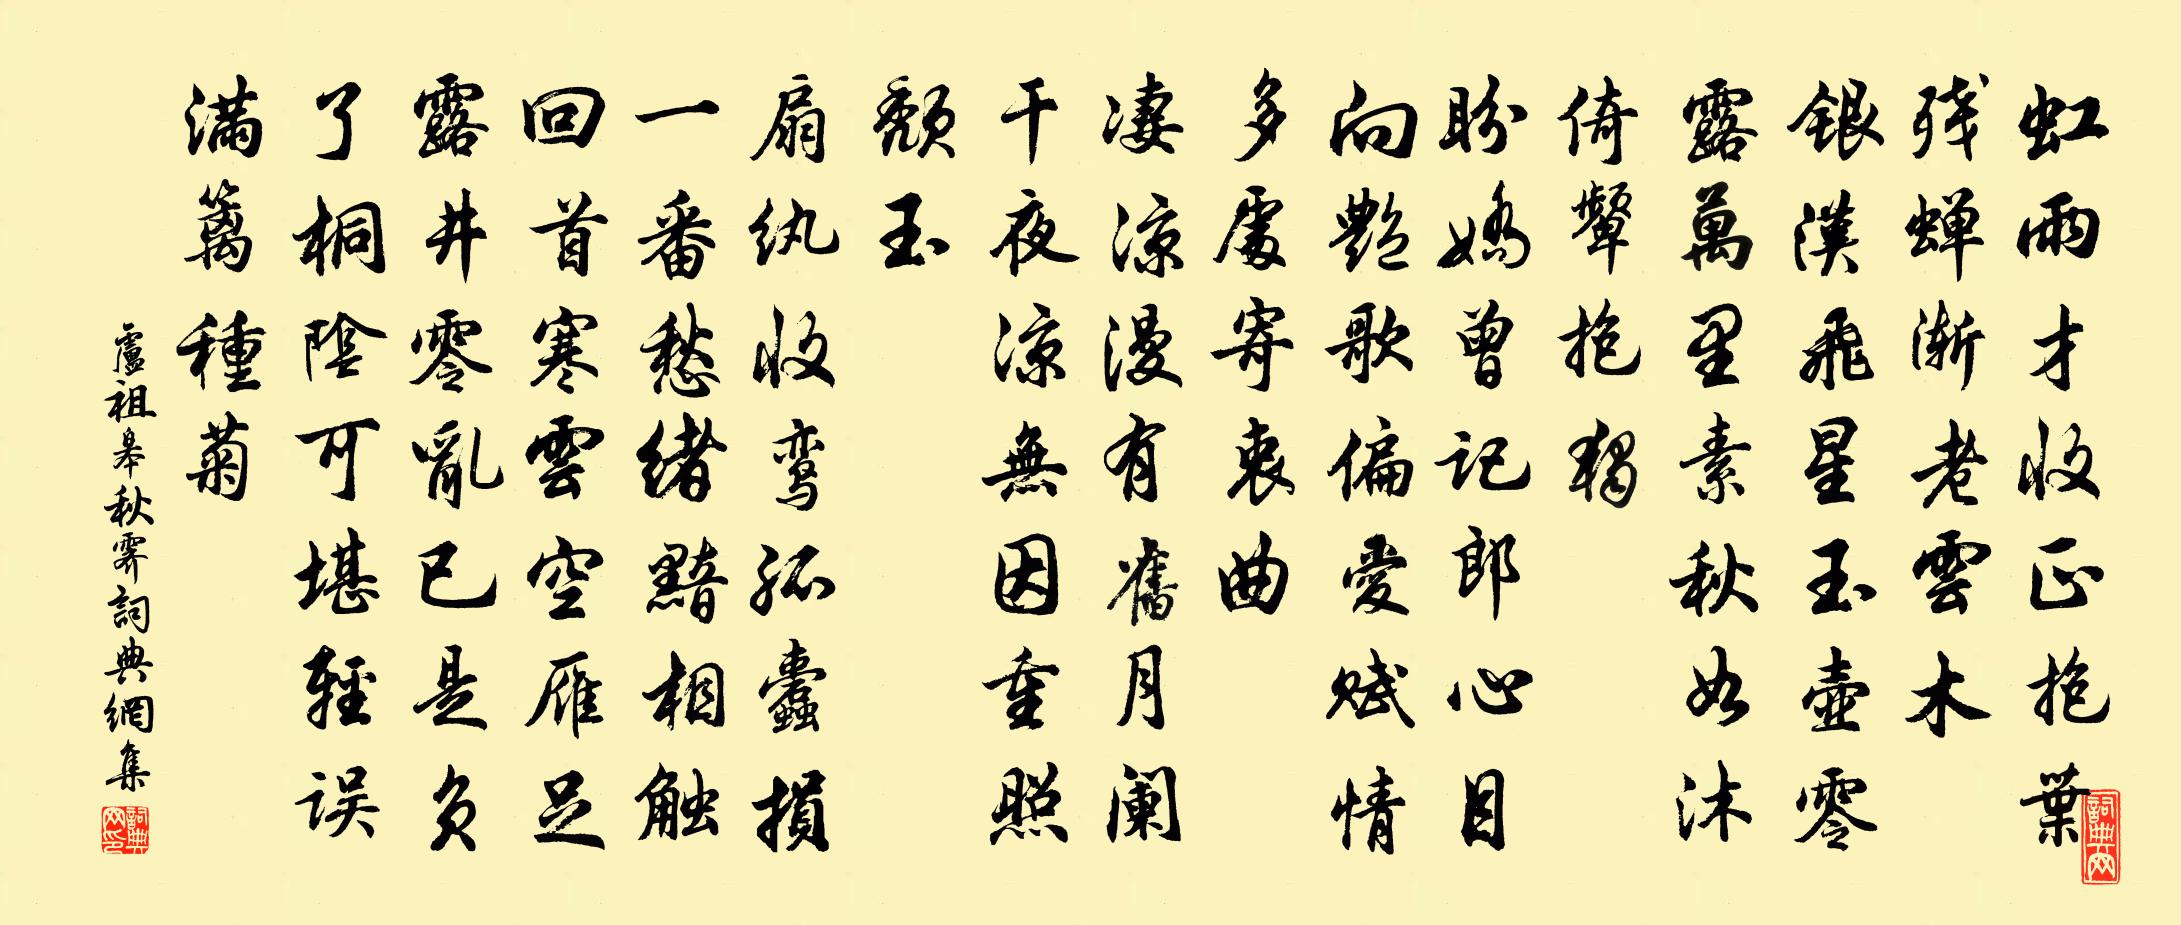 卢祖皋秋霁书法作品欣赏